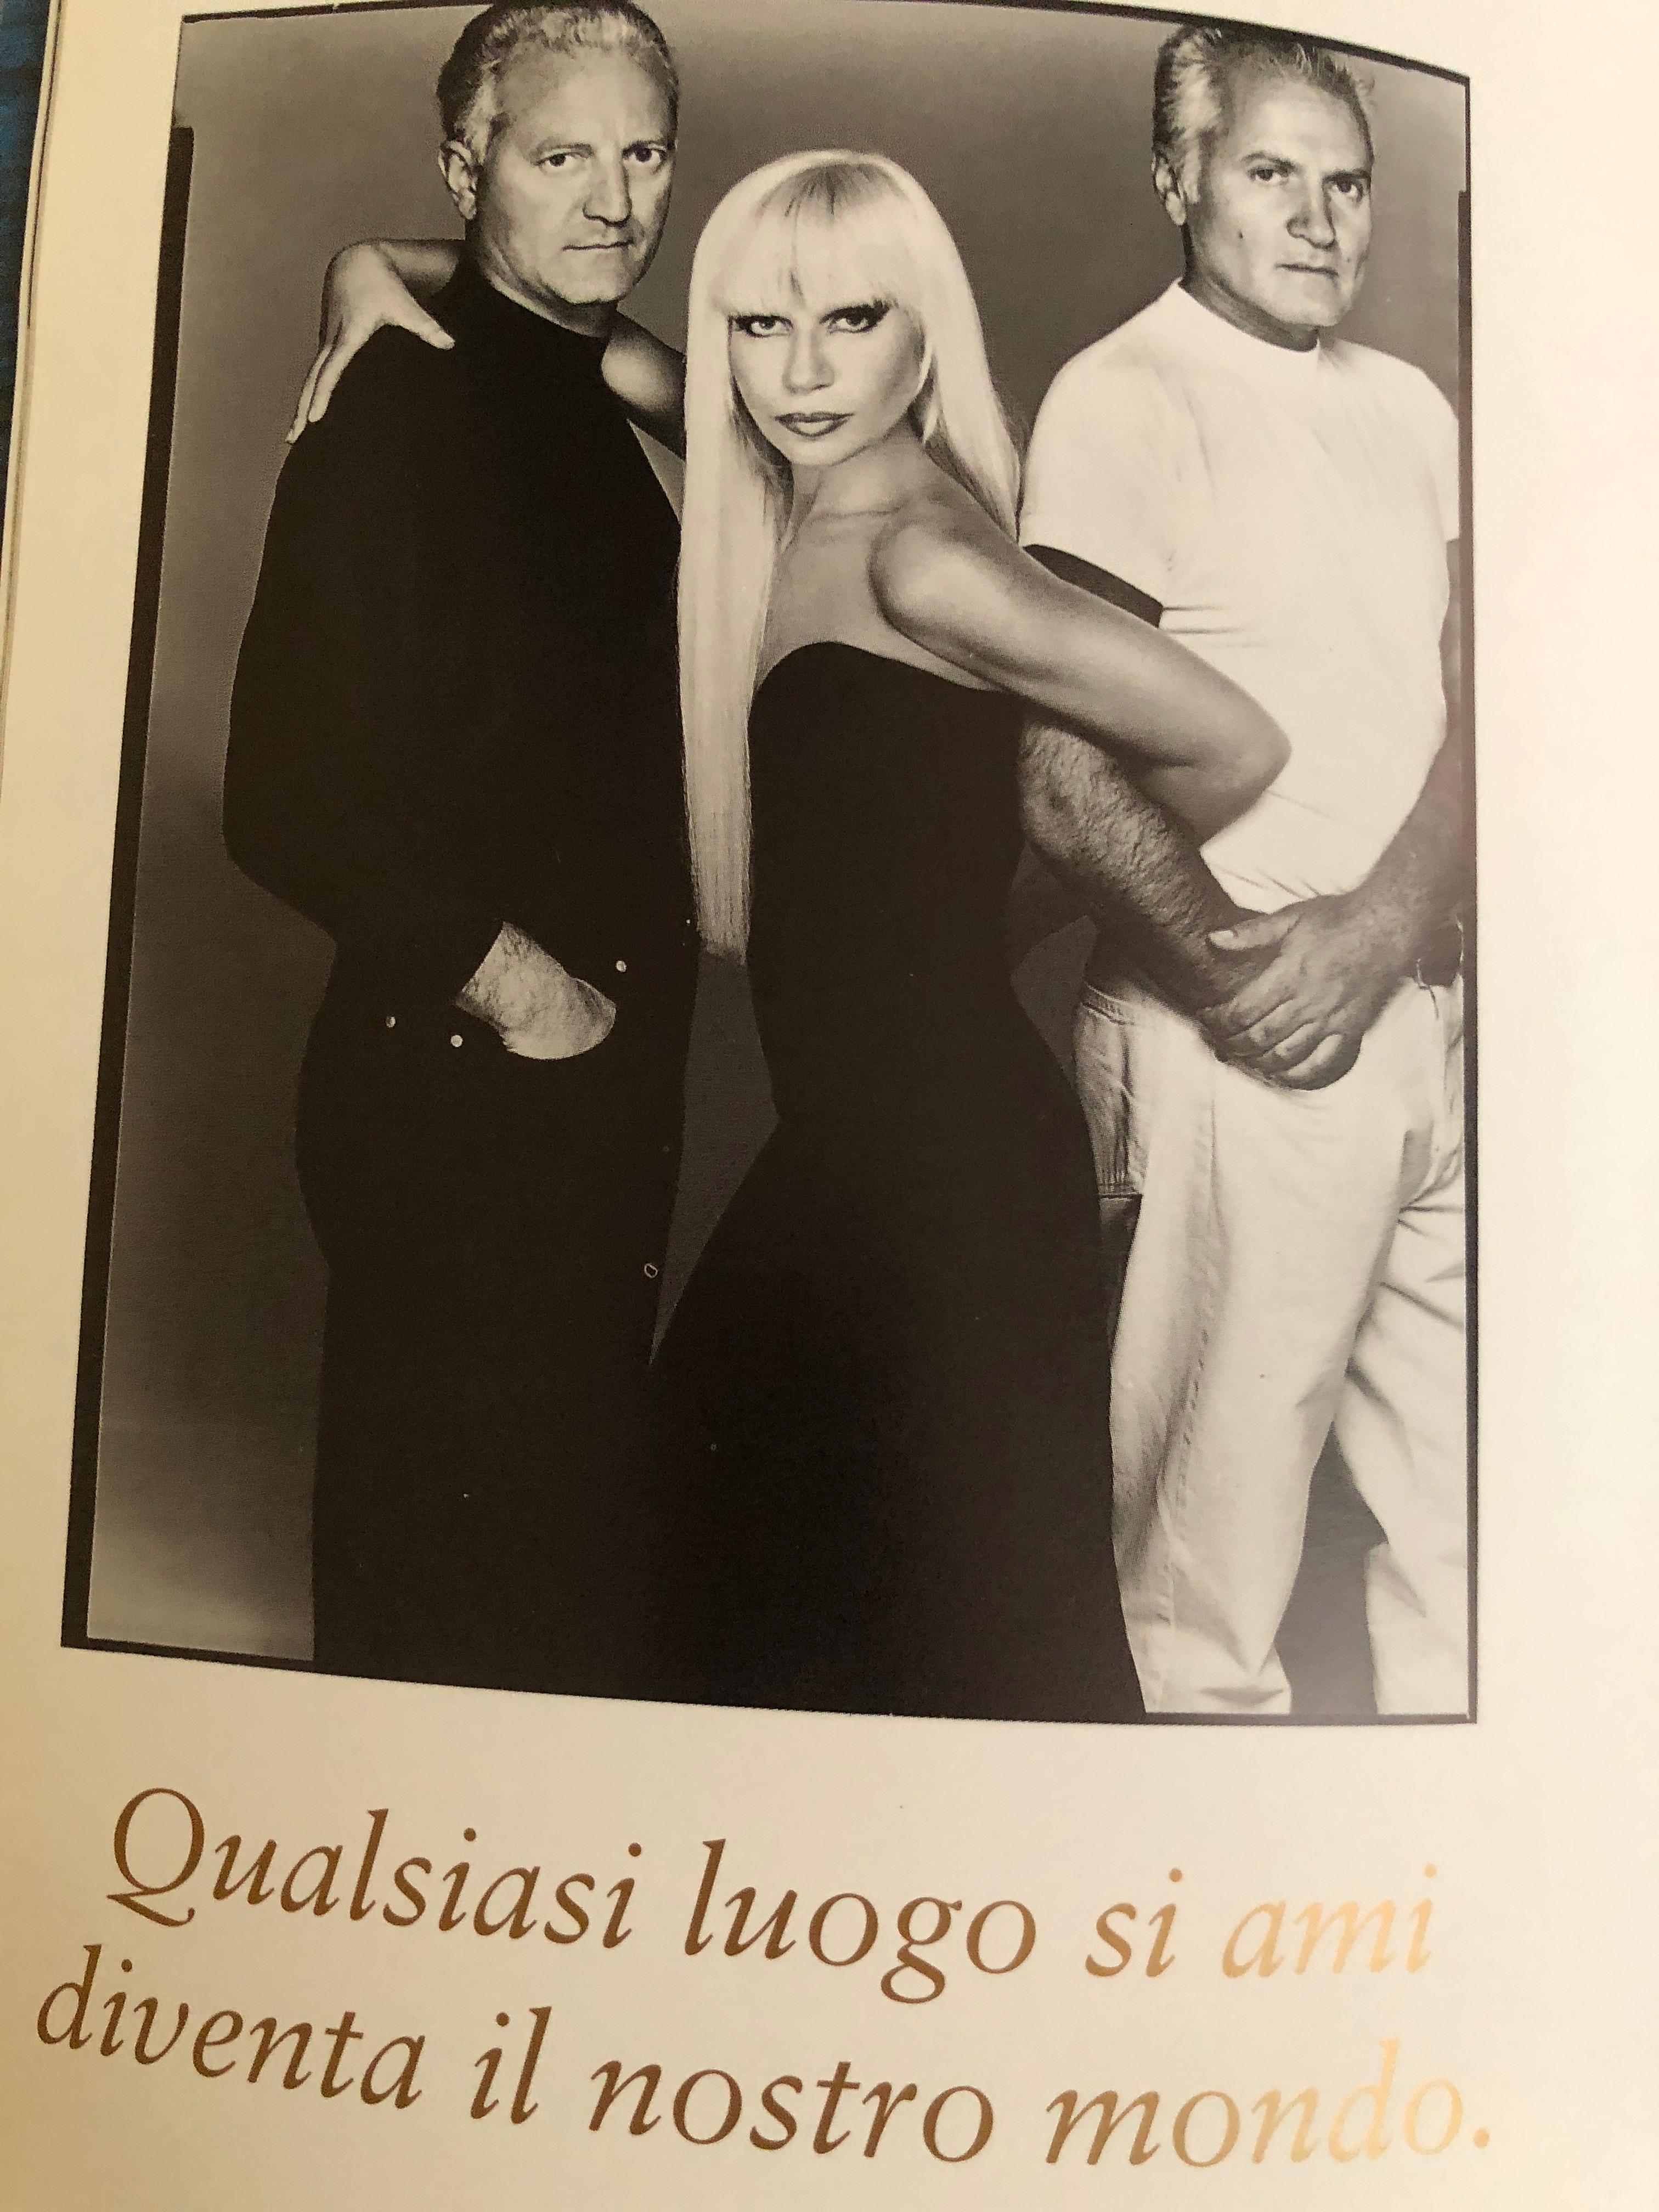 2022秋冬新作 洋書 Gianni Versace Do Not Disturb 作品集